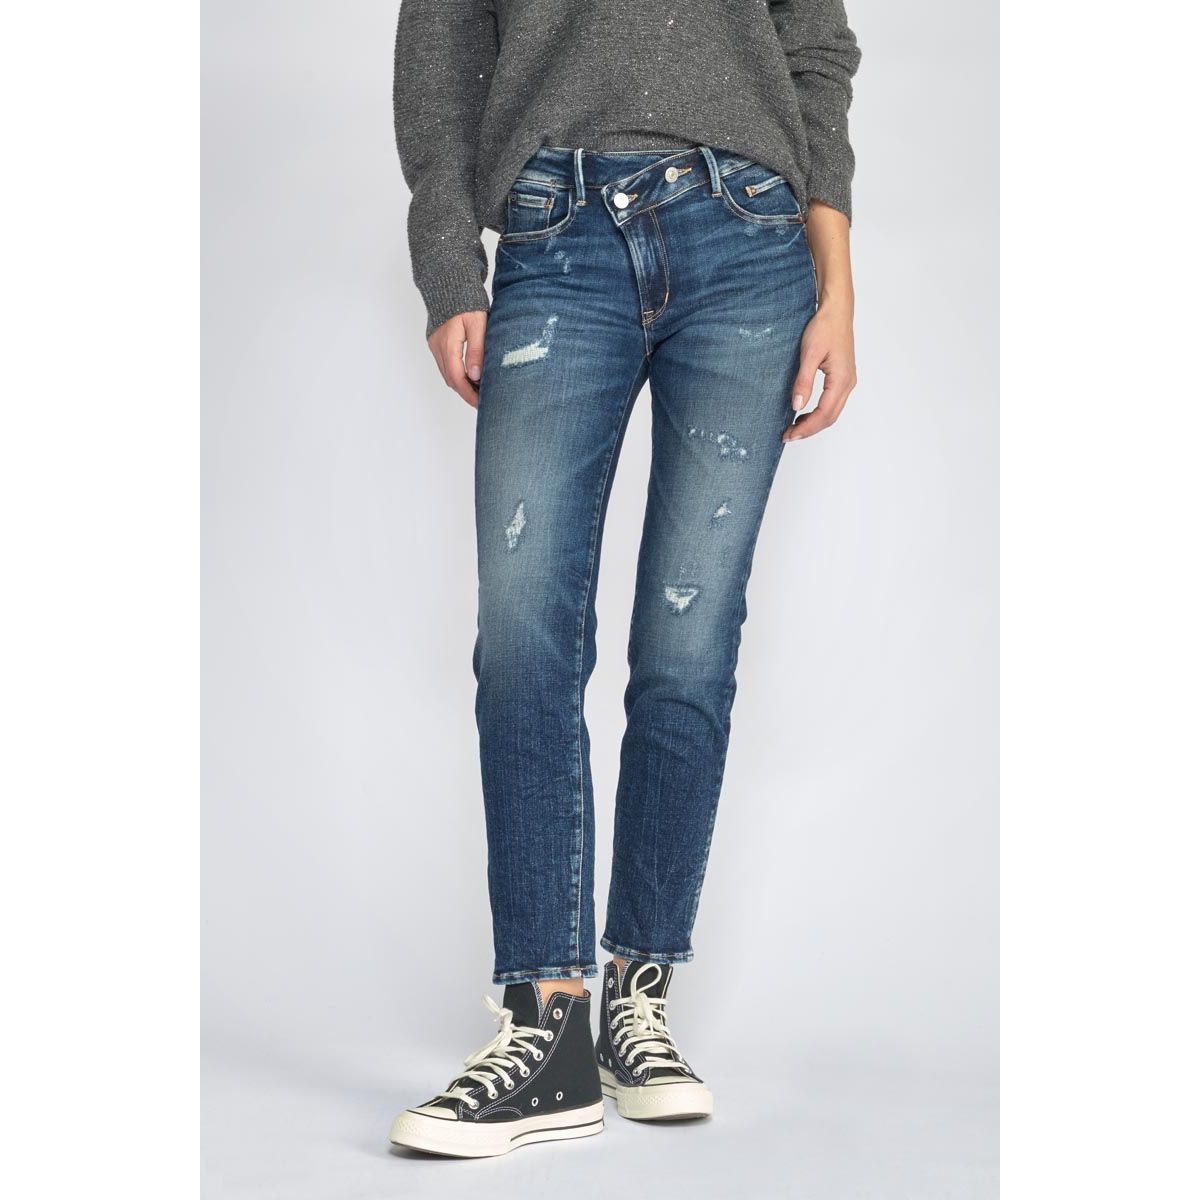 La Redoute Femme Vêtements Pantalons & Jeans Jeans Slim Cluzo push up slim 7/8ème jeans PULP 